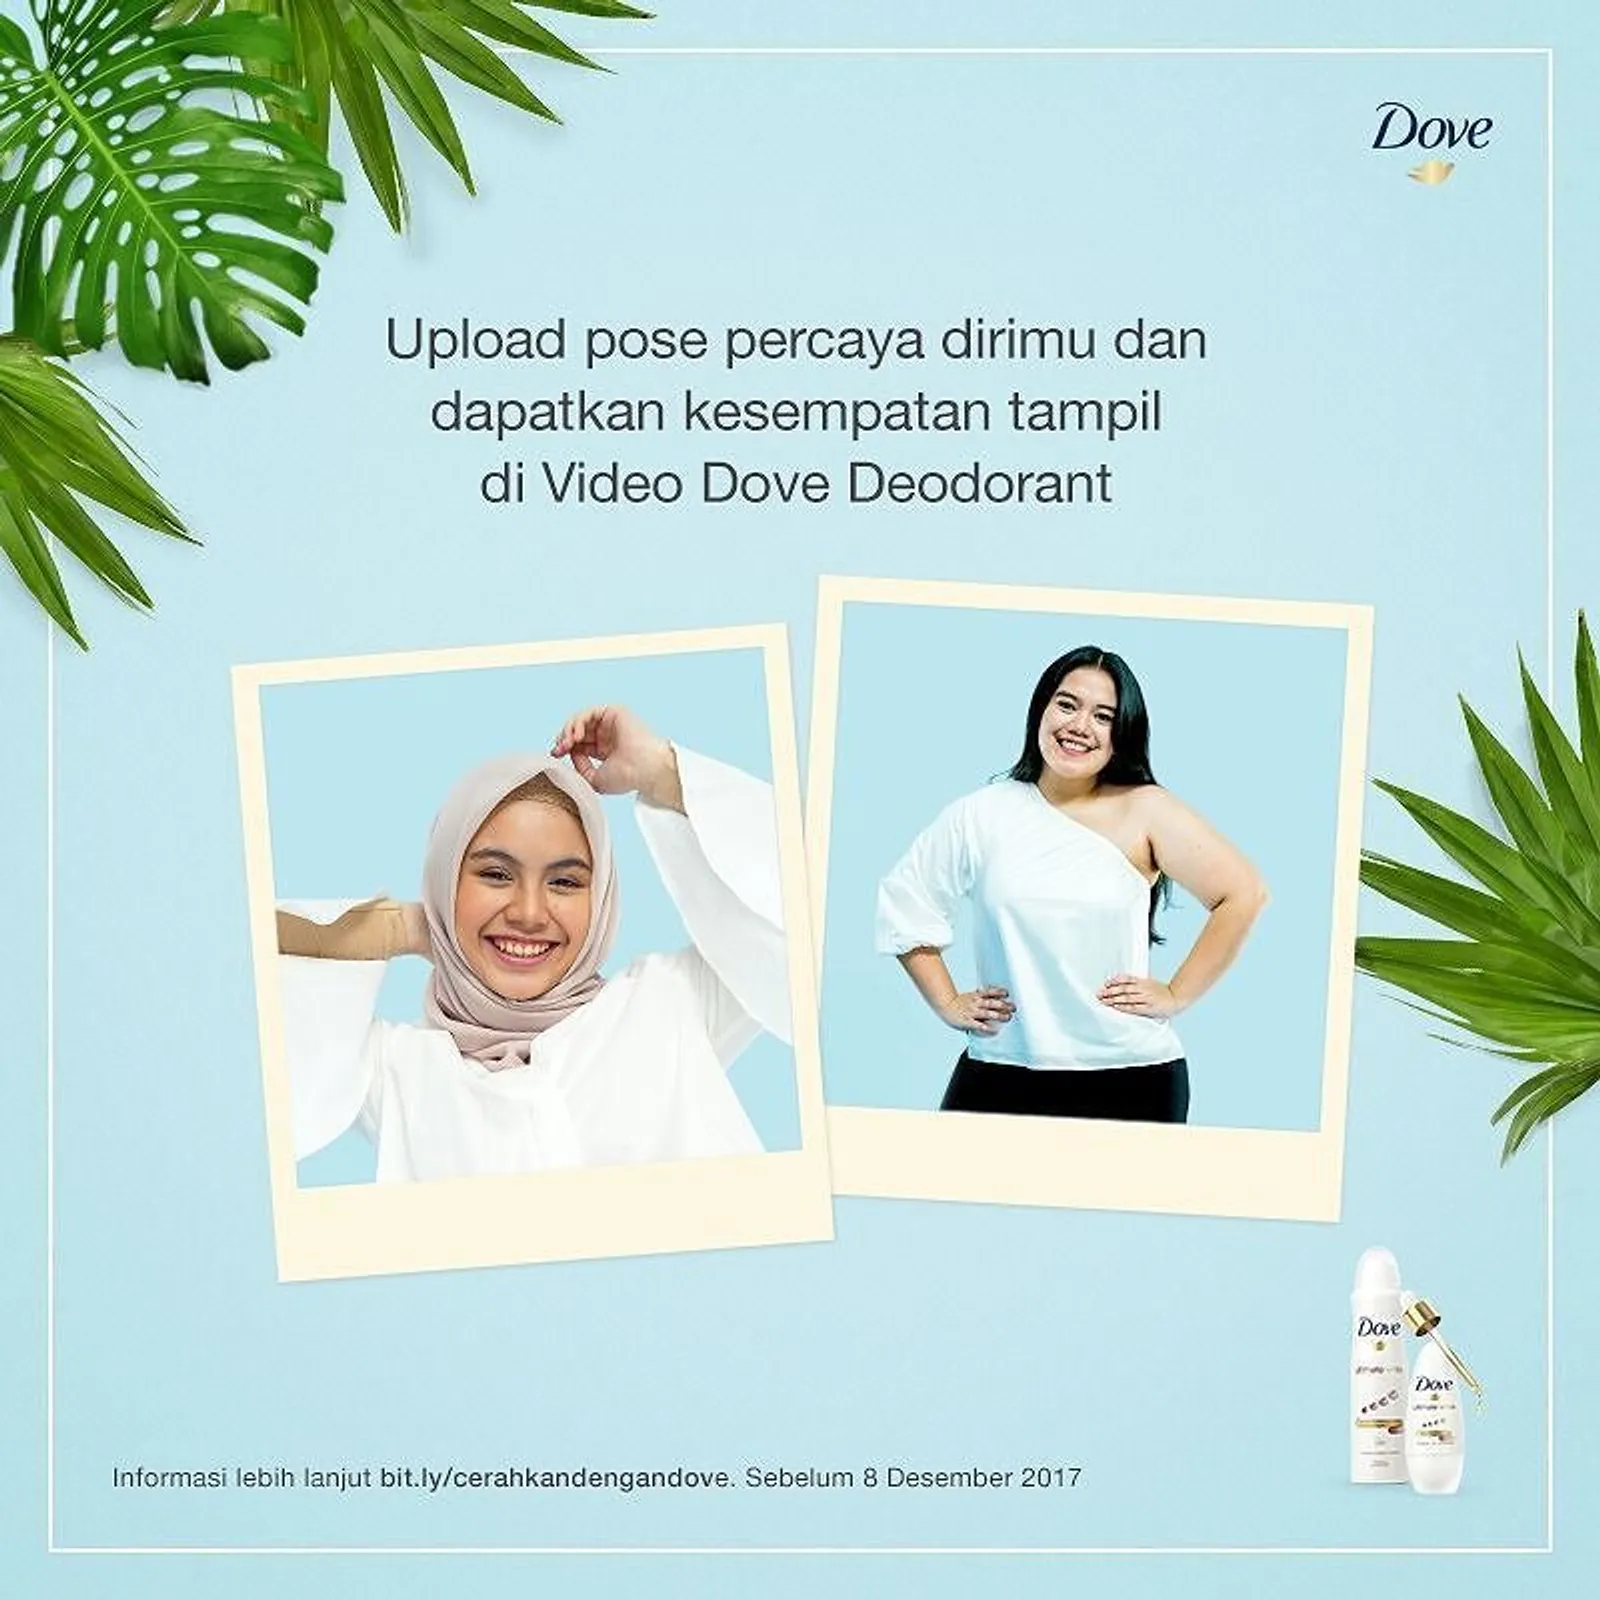 Tunjukkan Pose Percaya Dirimu dan Raih Kesempatan untuk Tampil di Video Dove Deodorant!